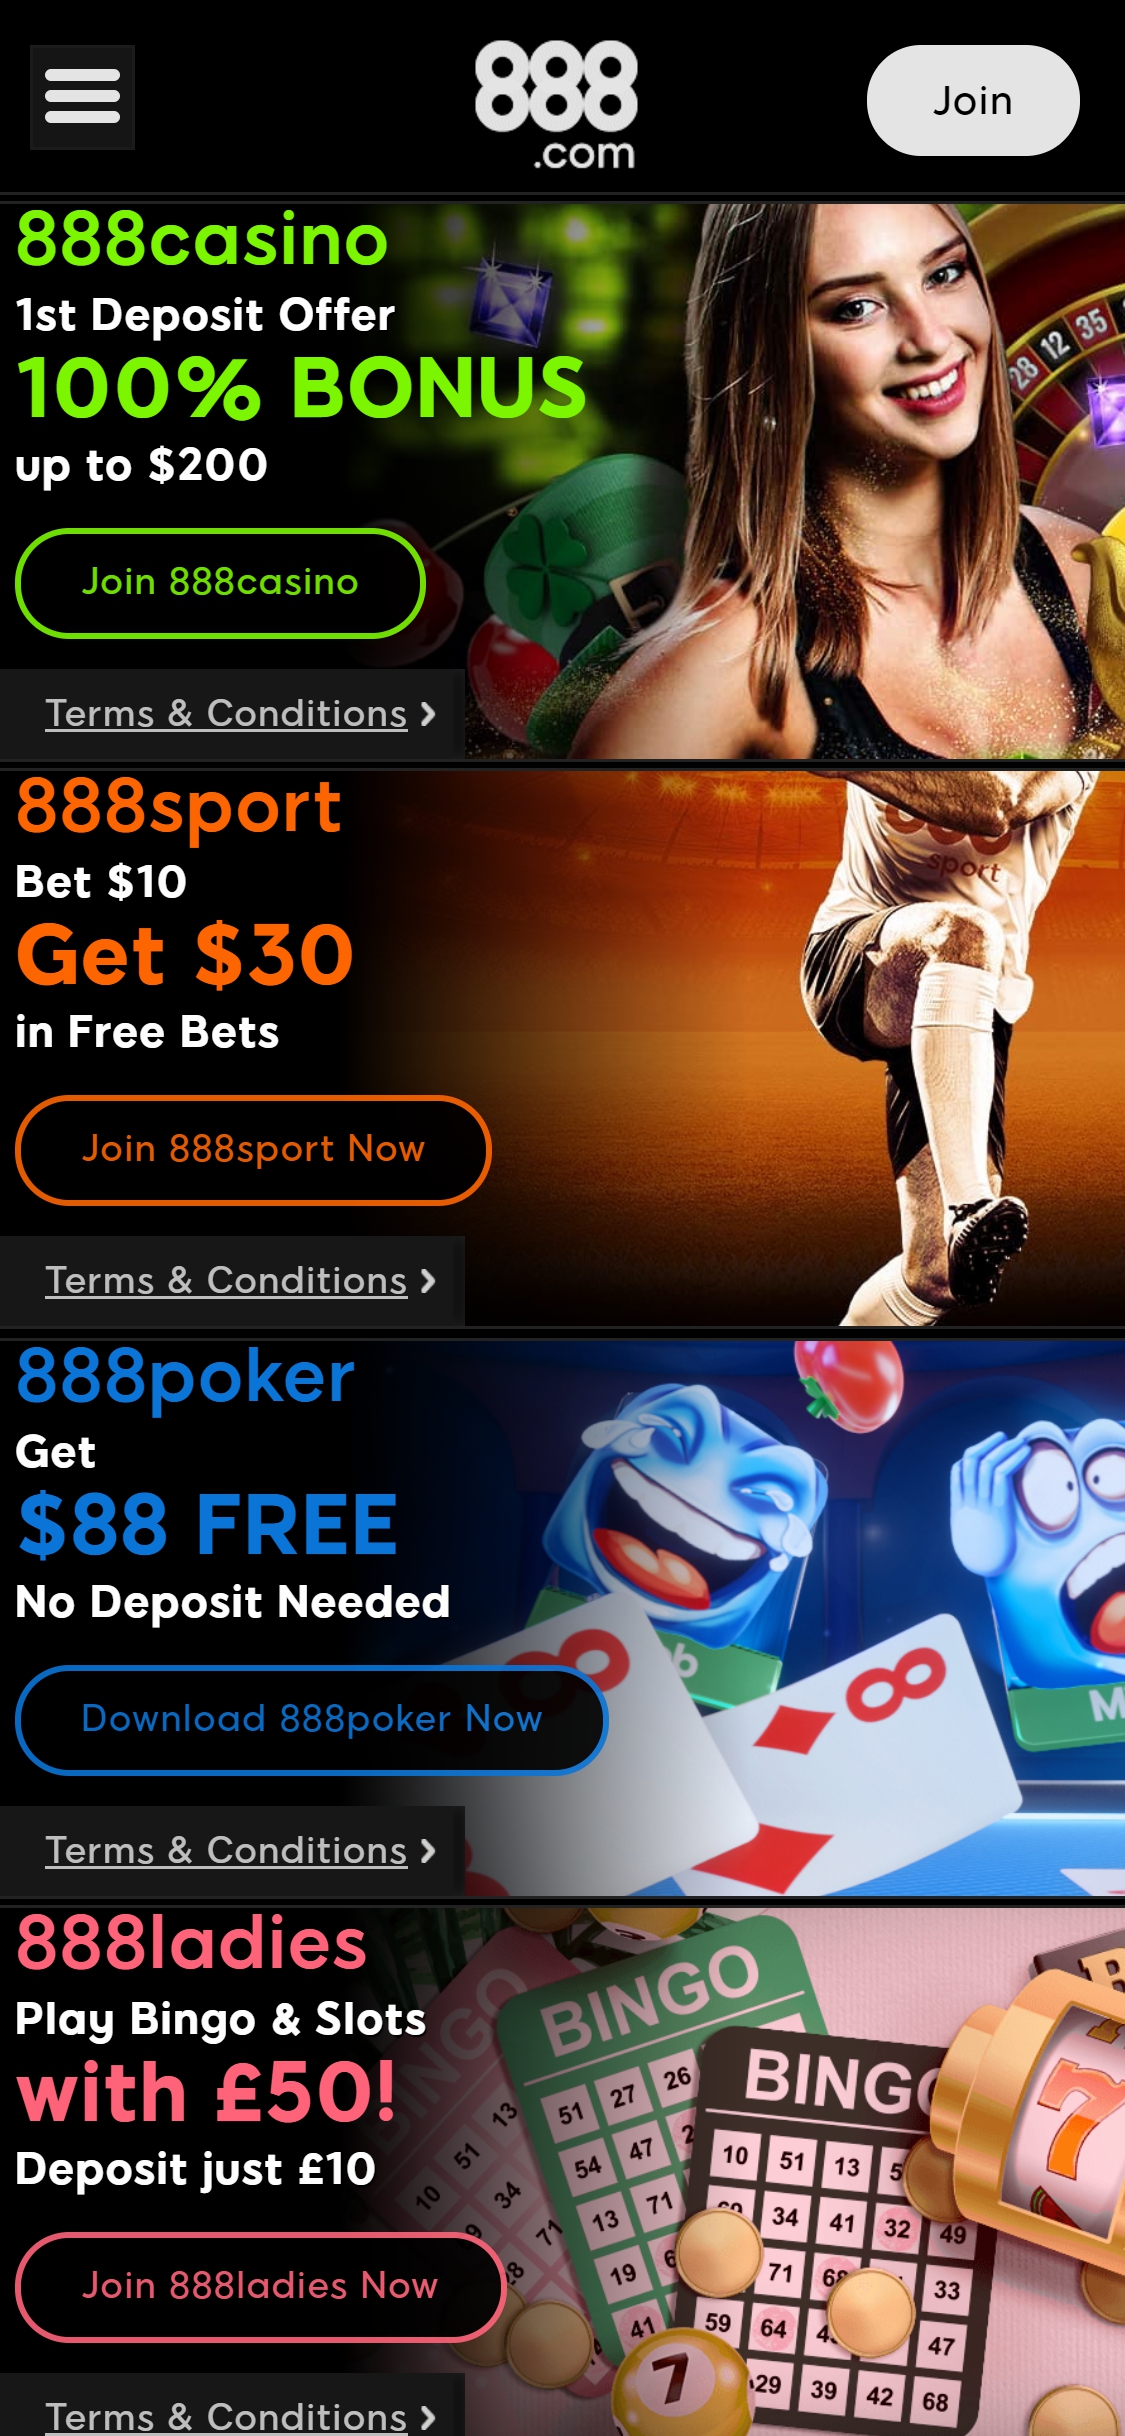 888.com Casino Mobile No Deposit Bonus Review